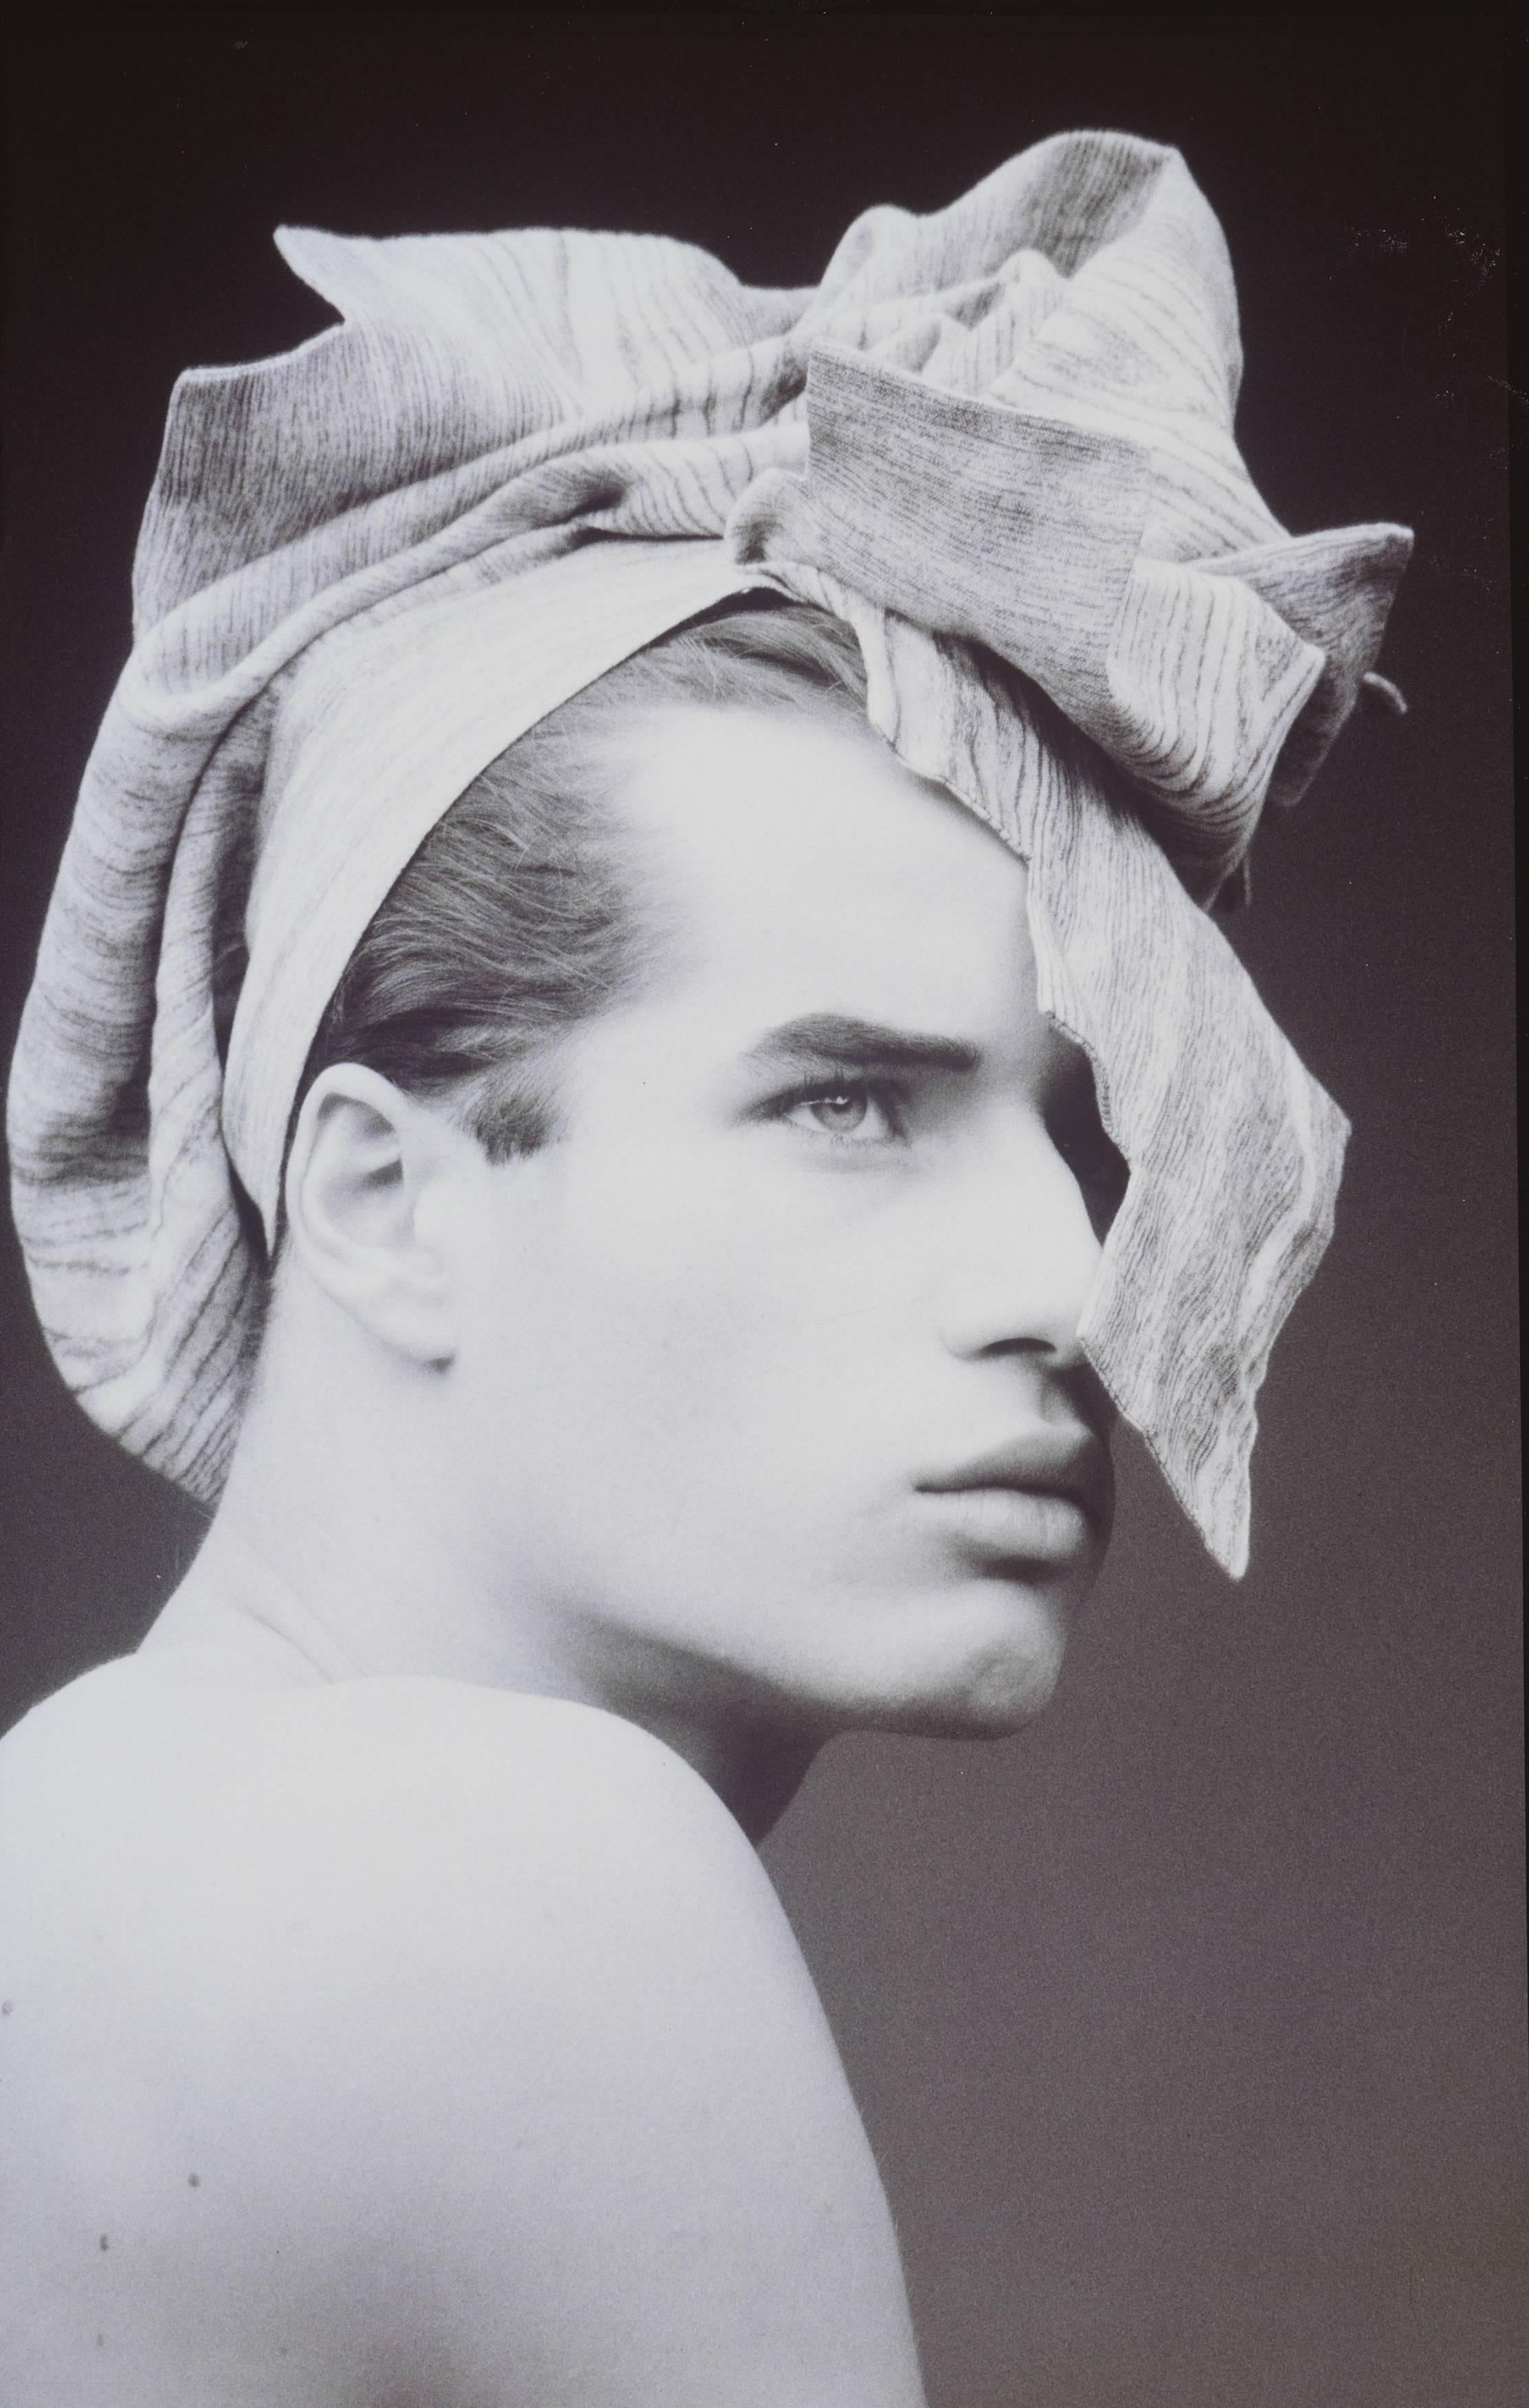 Tony Viramontes Portrait Photograph - Prêt à porter, April 1985. Man portrait, black and white fashion photography